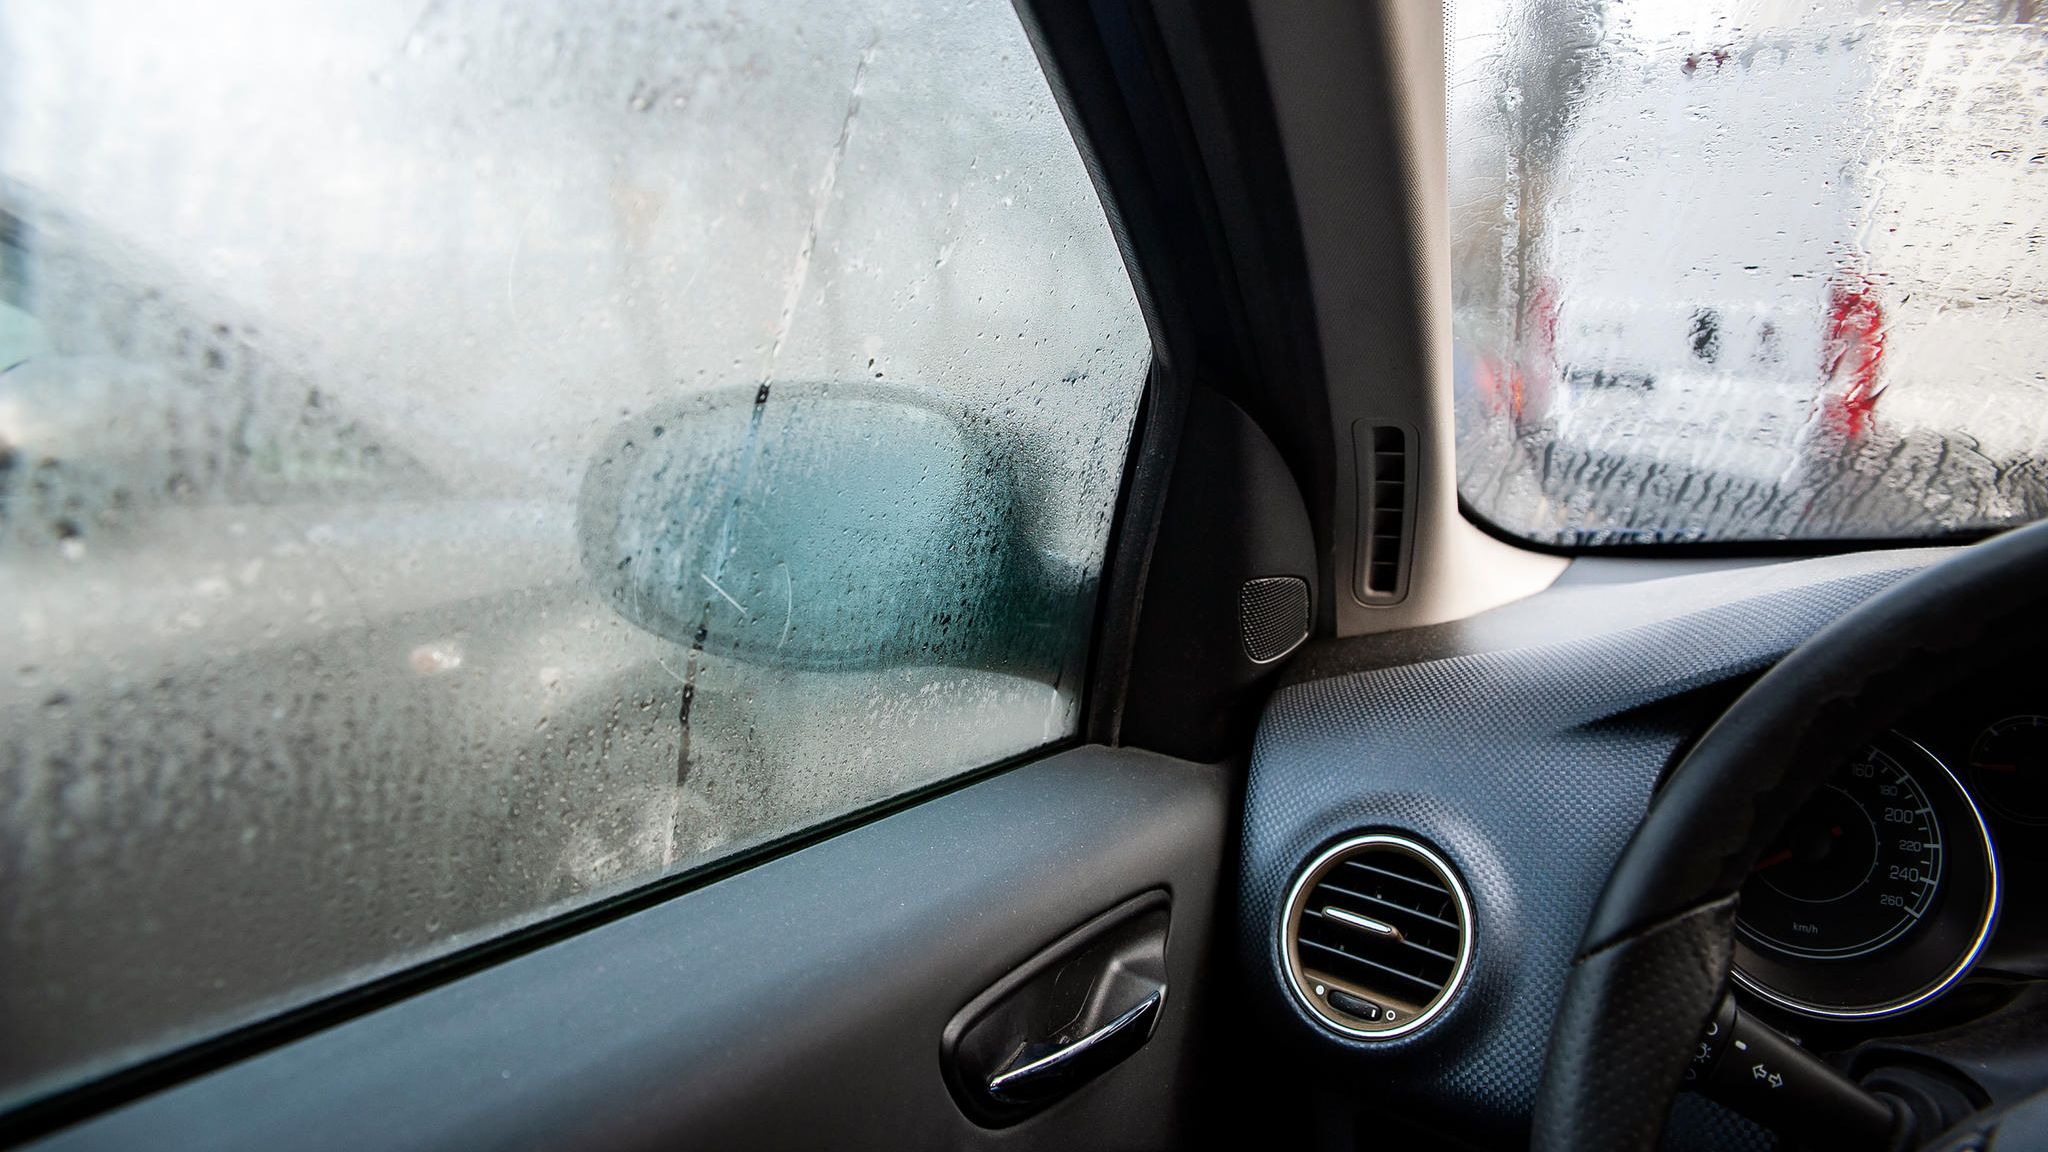 4DRY DUO Auto-Entfeuchter, der Lösung für beschlagene Fenster